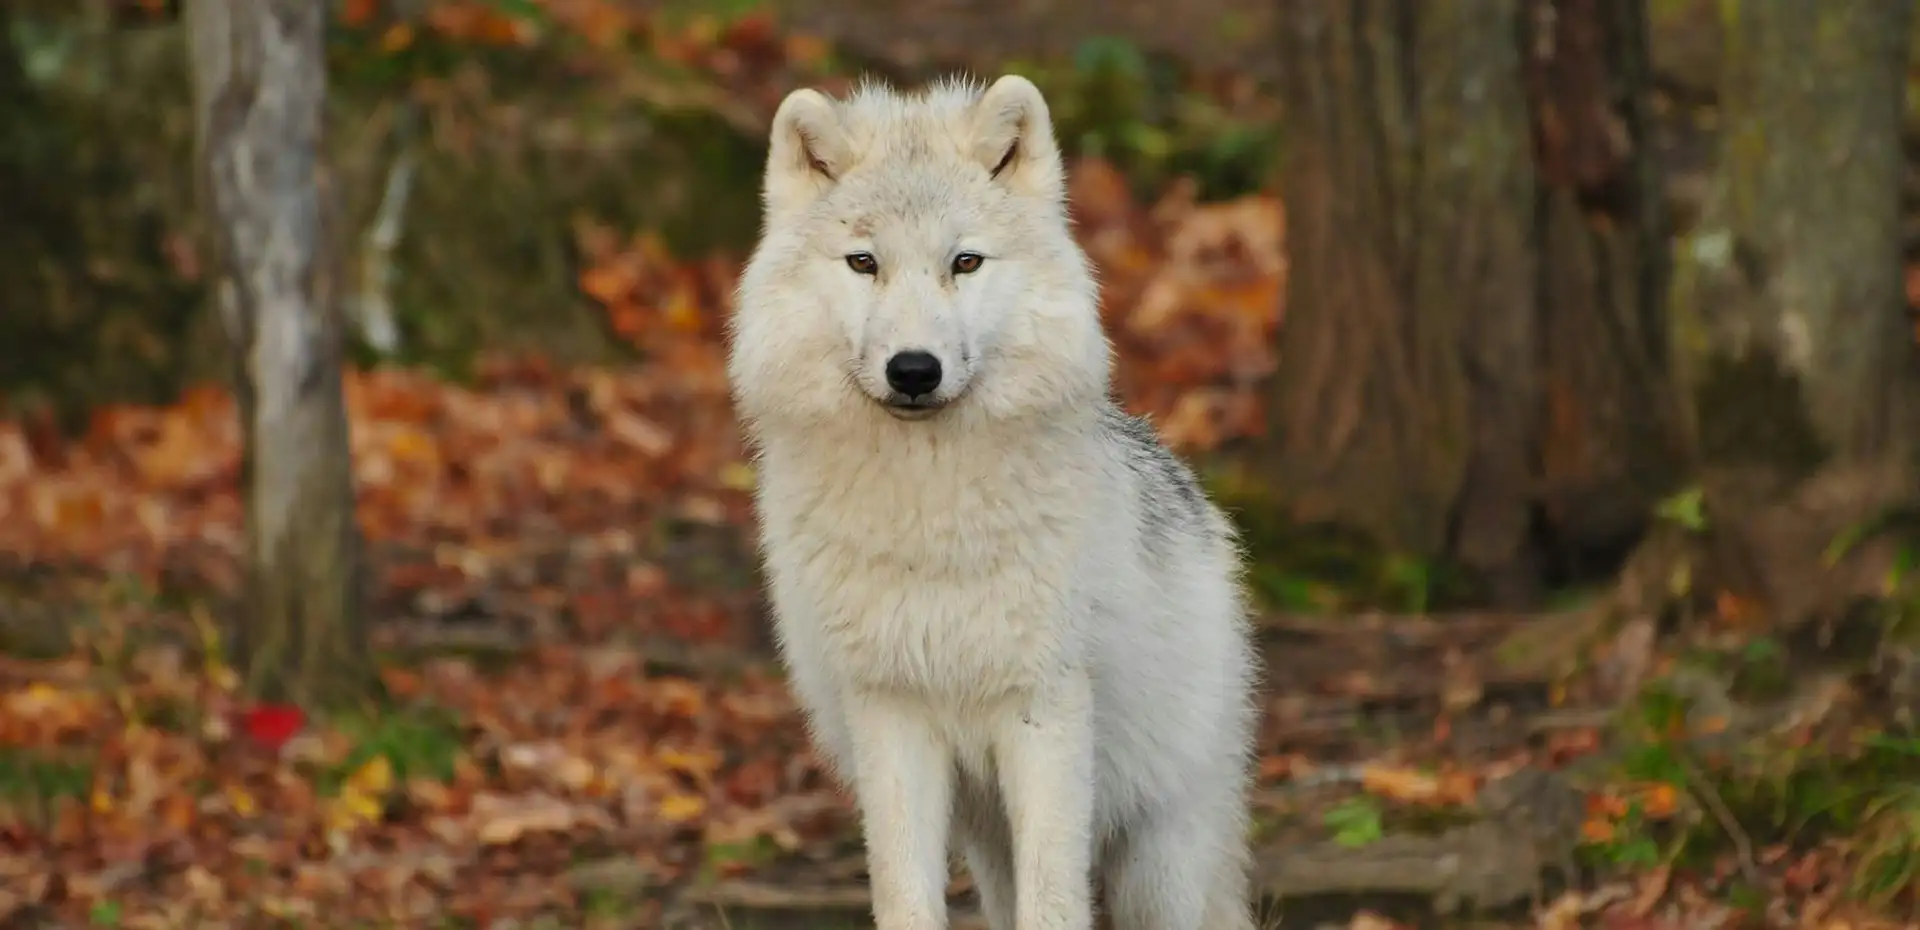 Lobo blanco